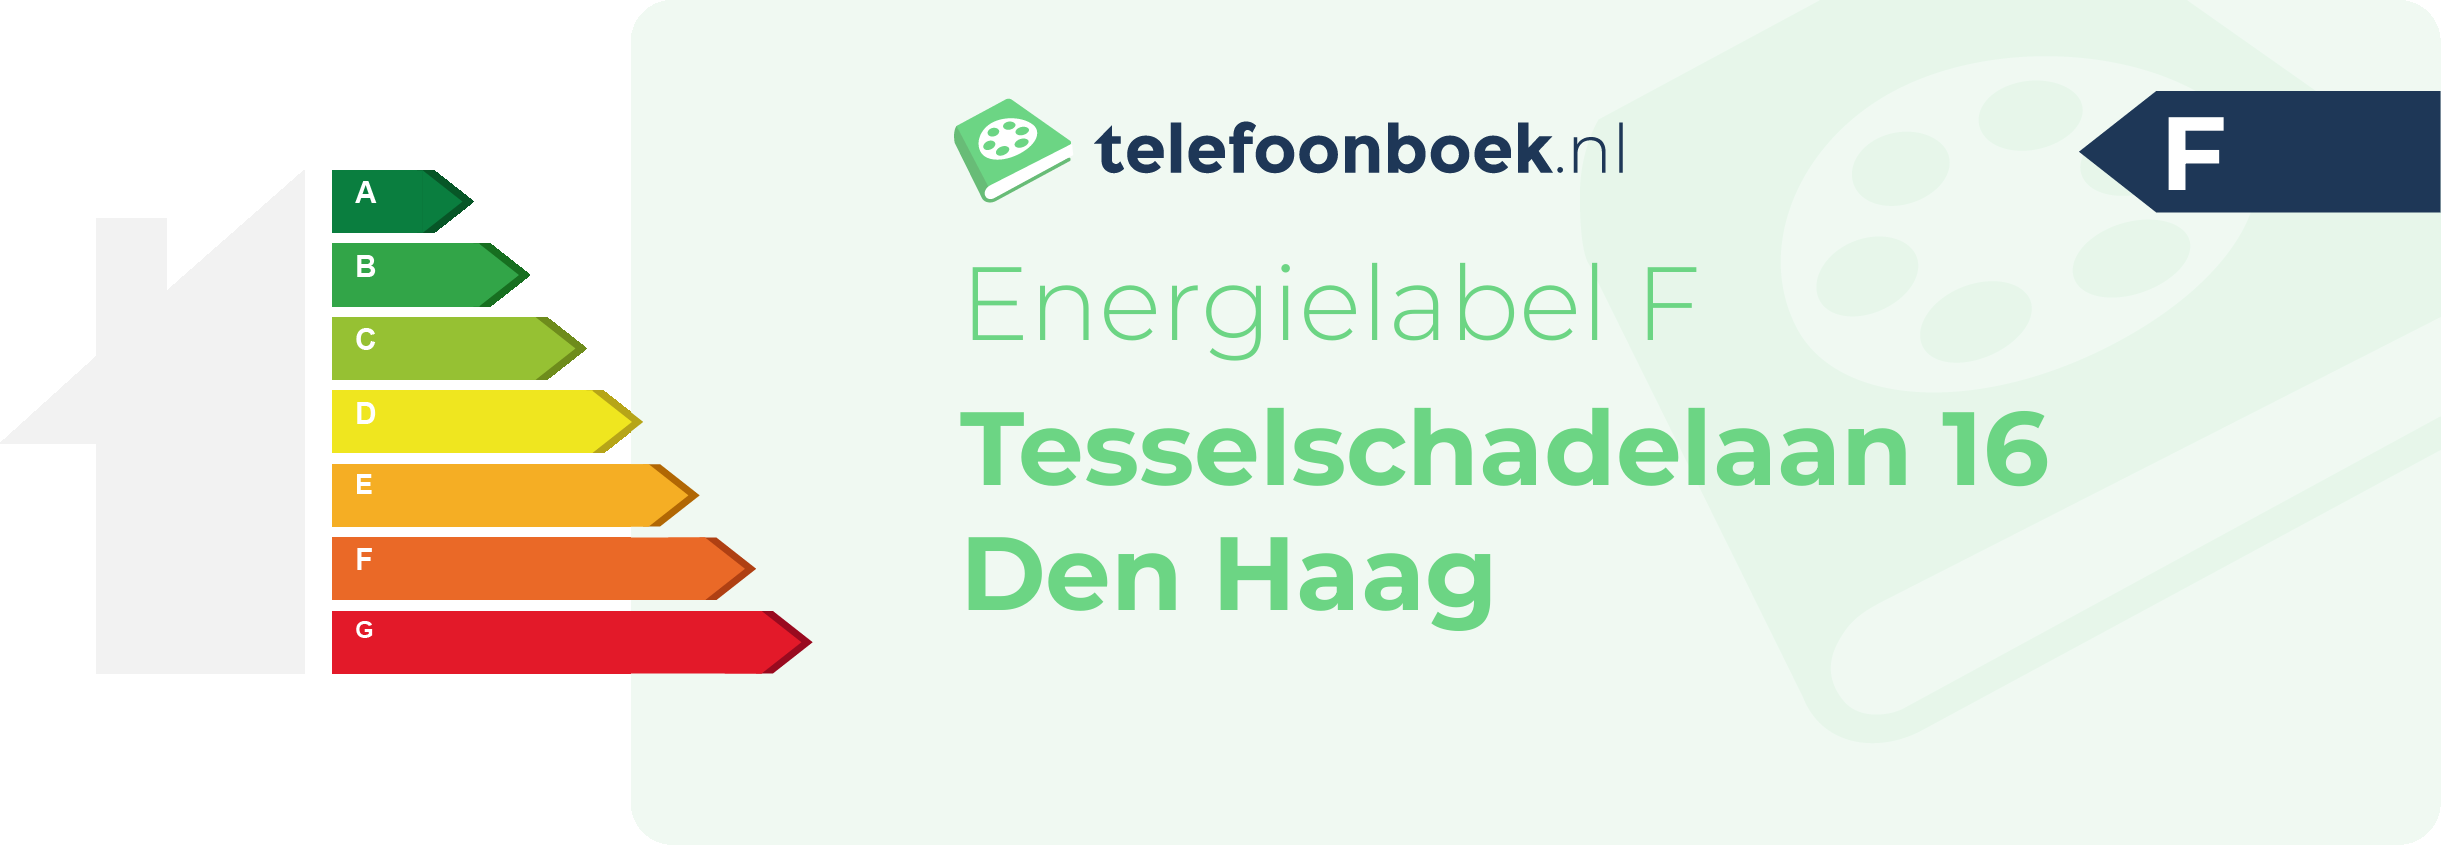 Energielabel Tesselschadelaan 16 Den Haag